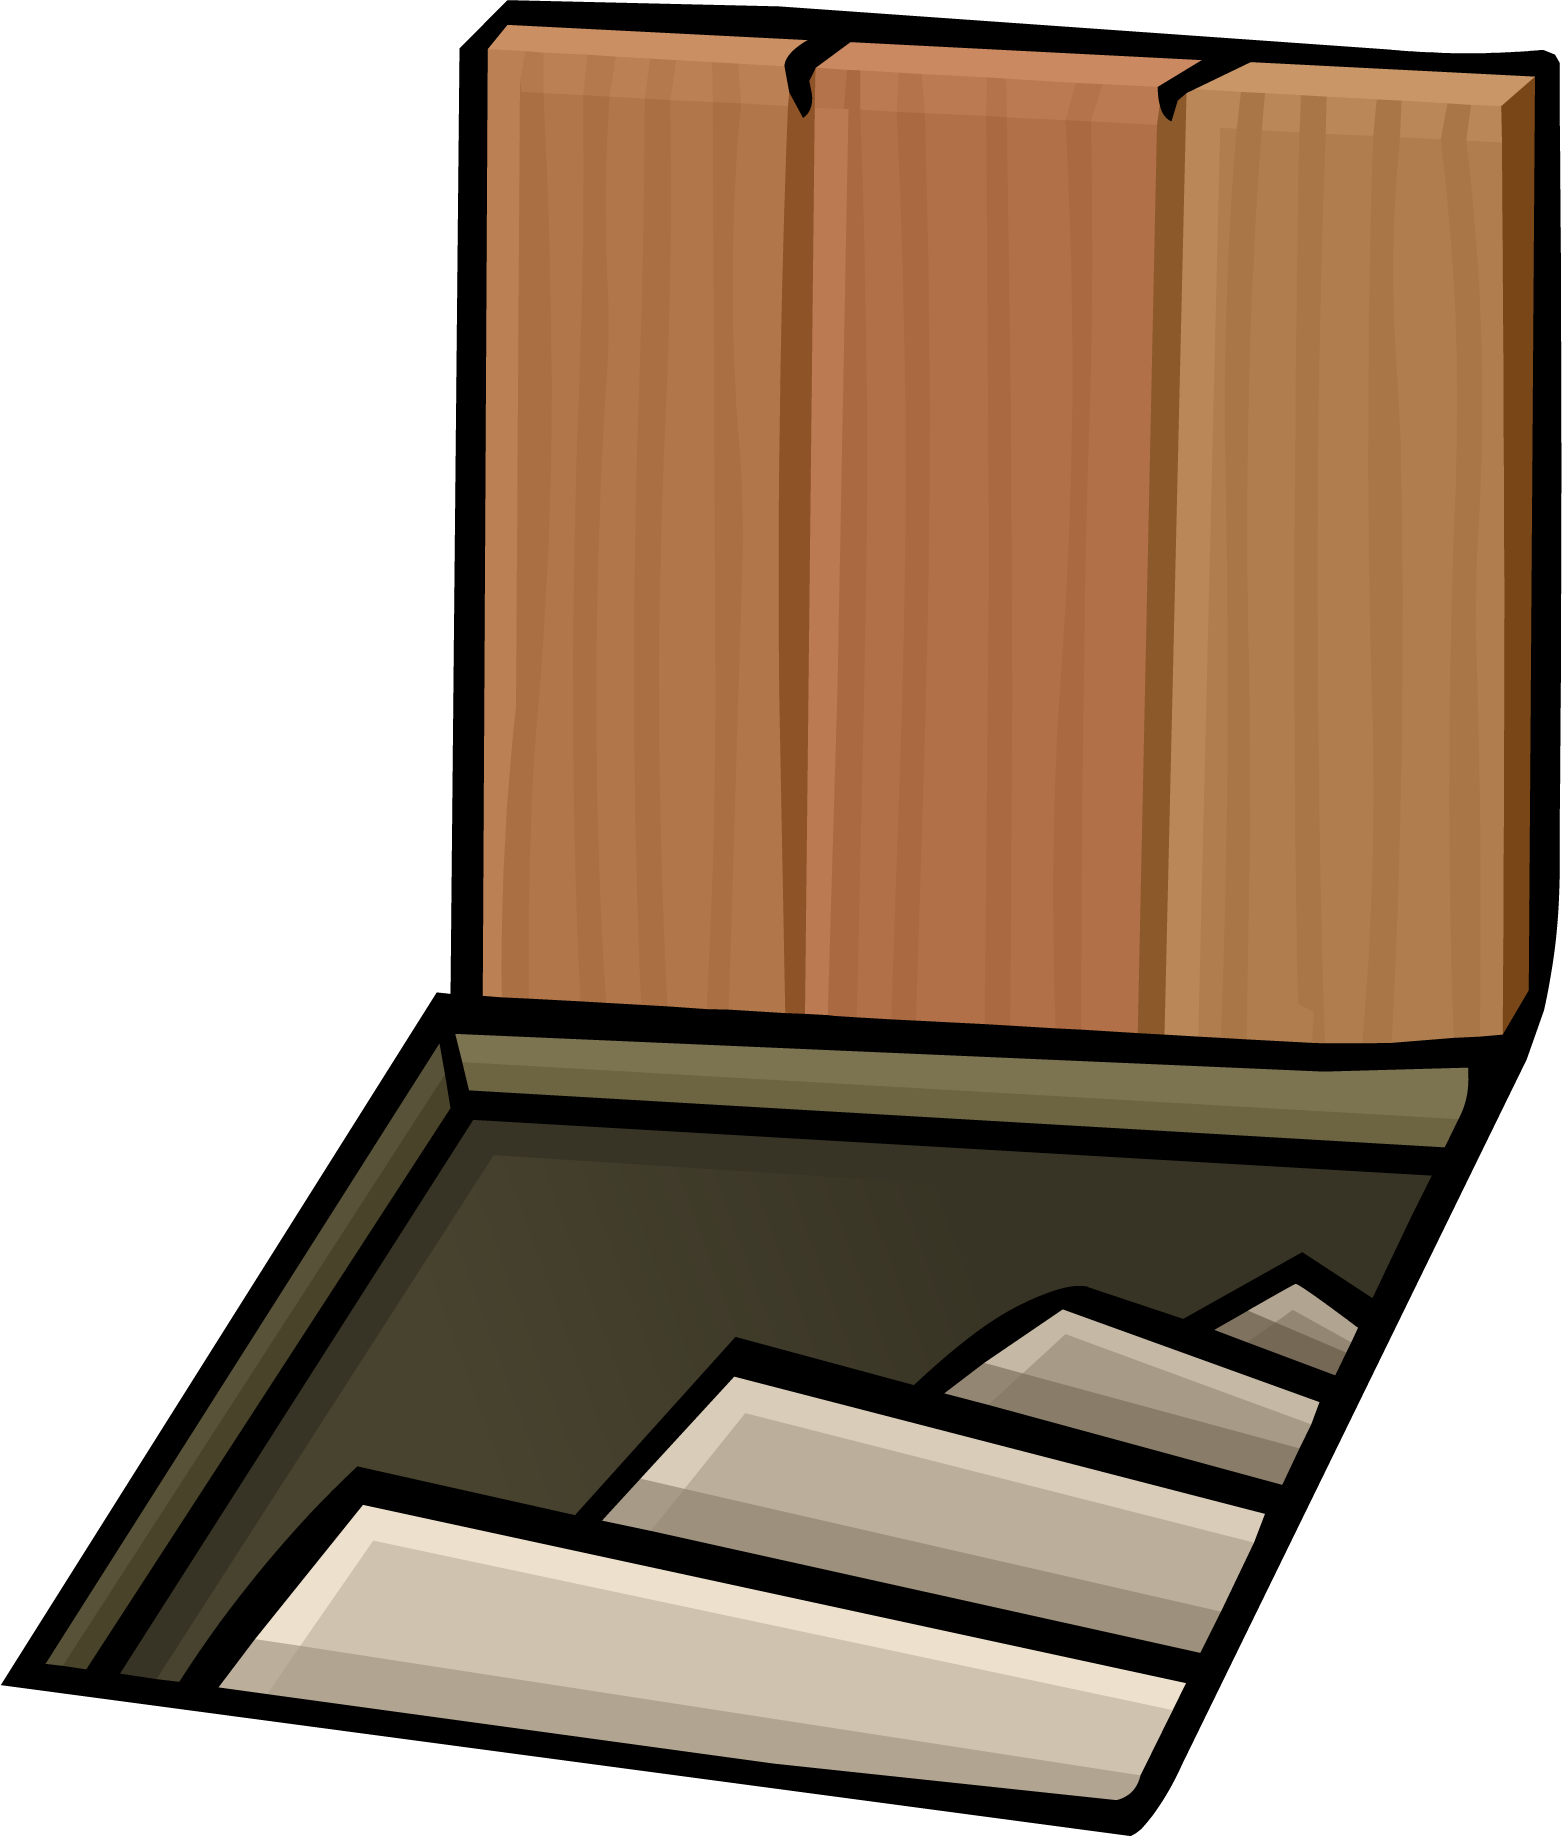 Trap Door Clipart - Trap Door Clip Art Transparent (1562x1836)